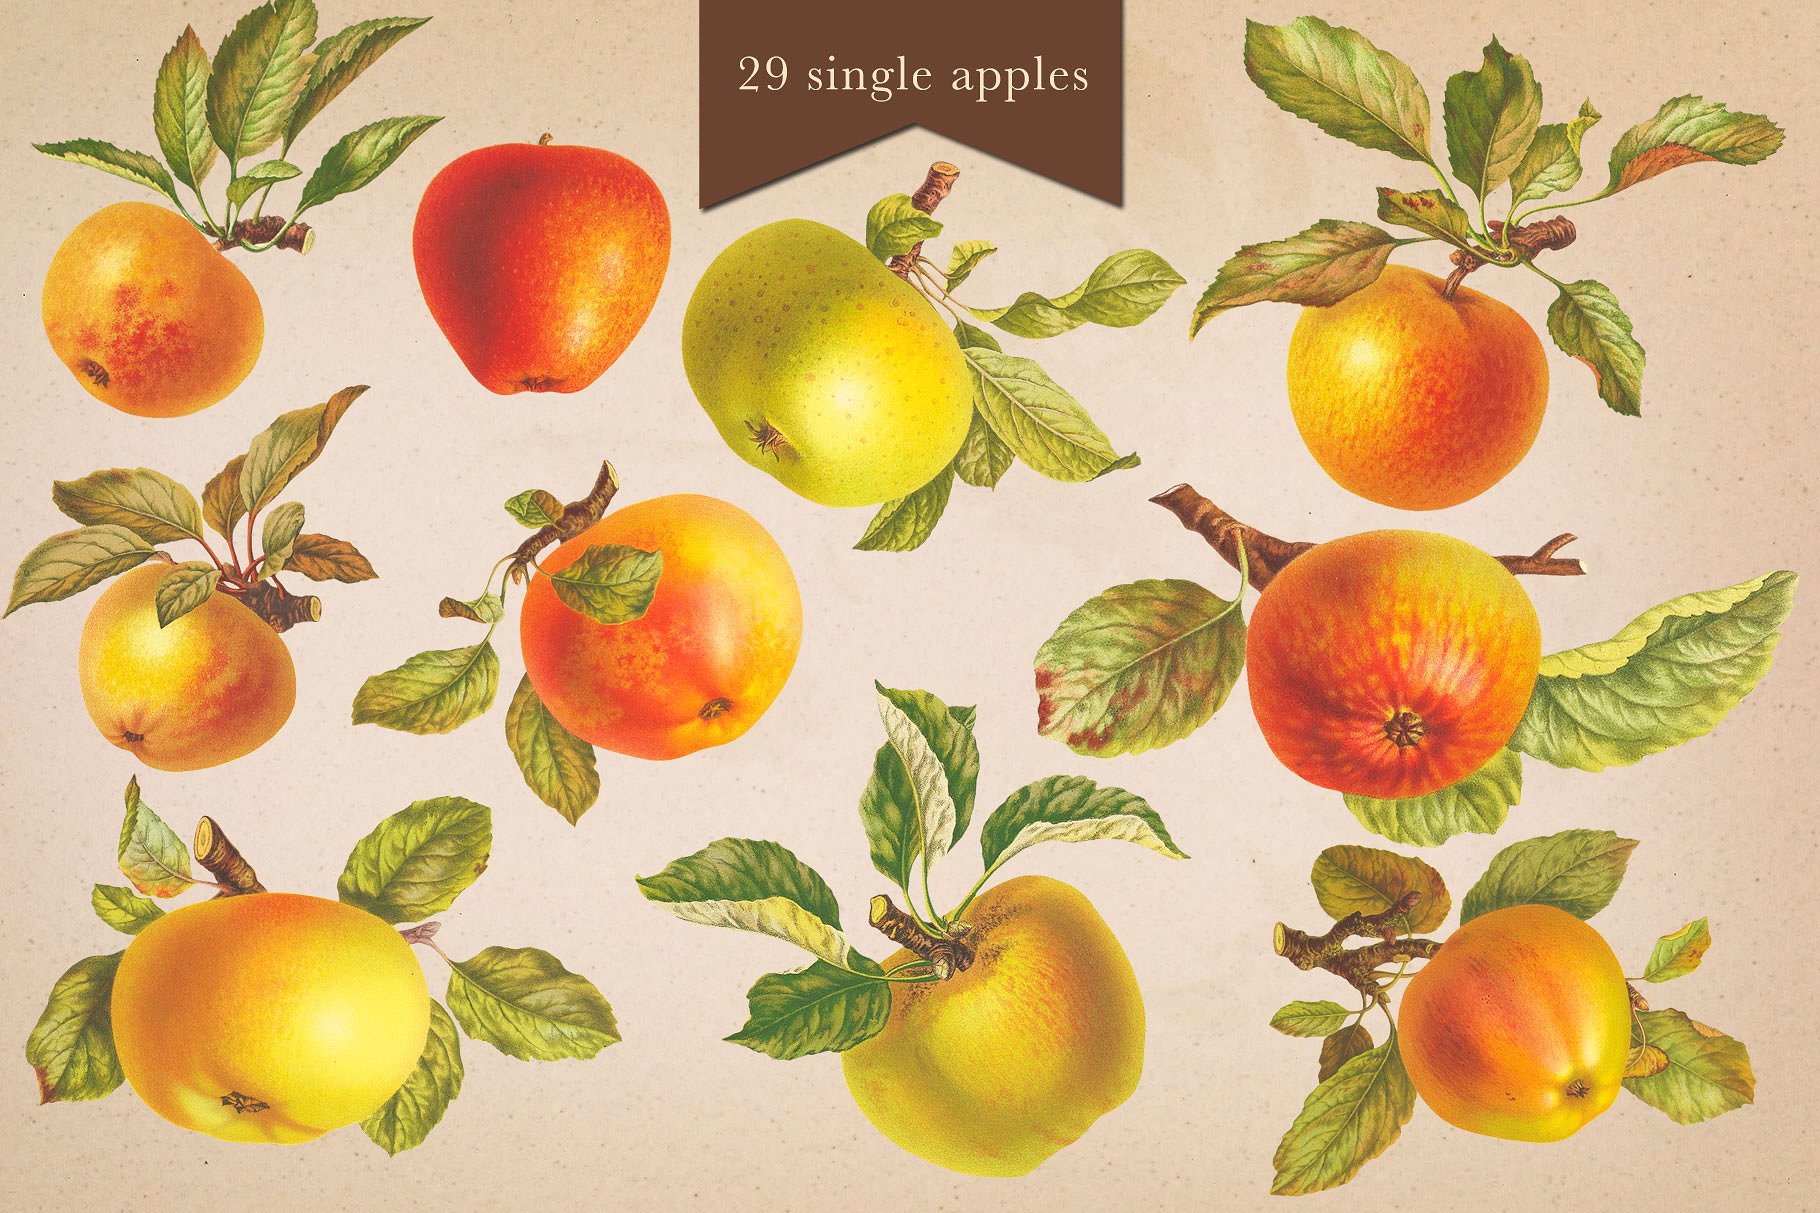 手绘水果背景设计素材Cider House Apple -a